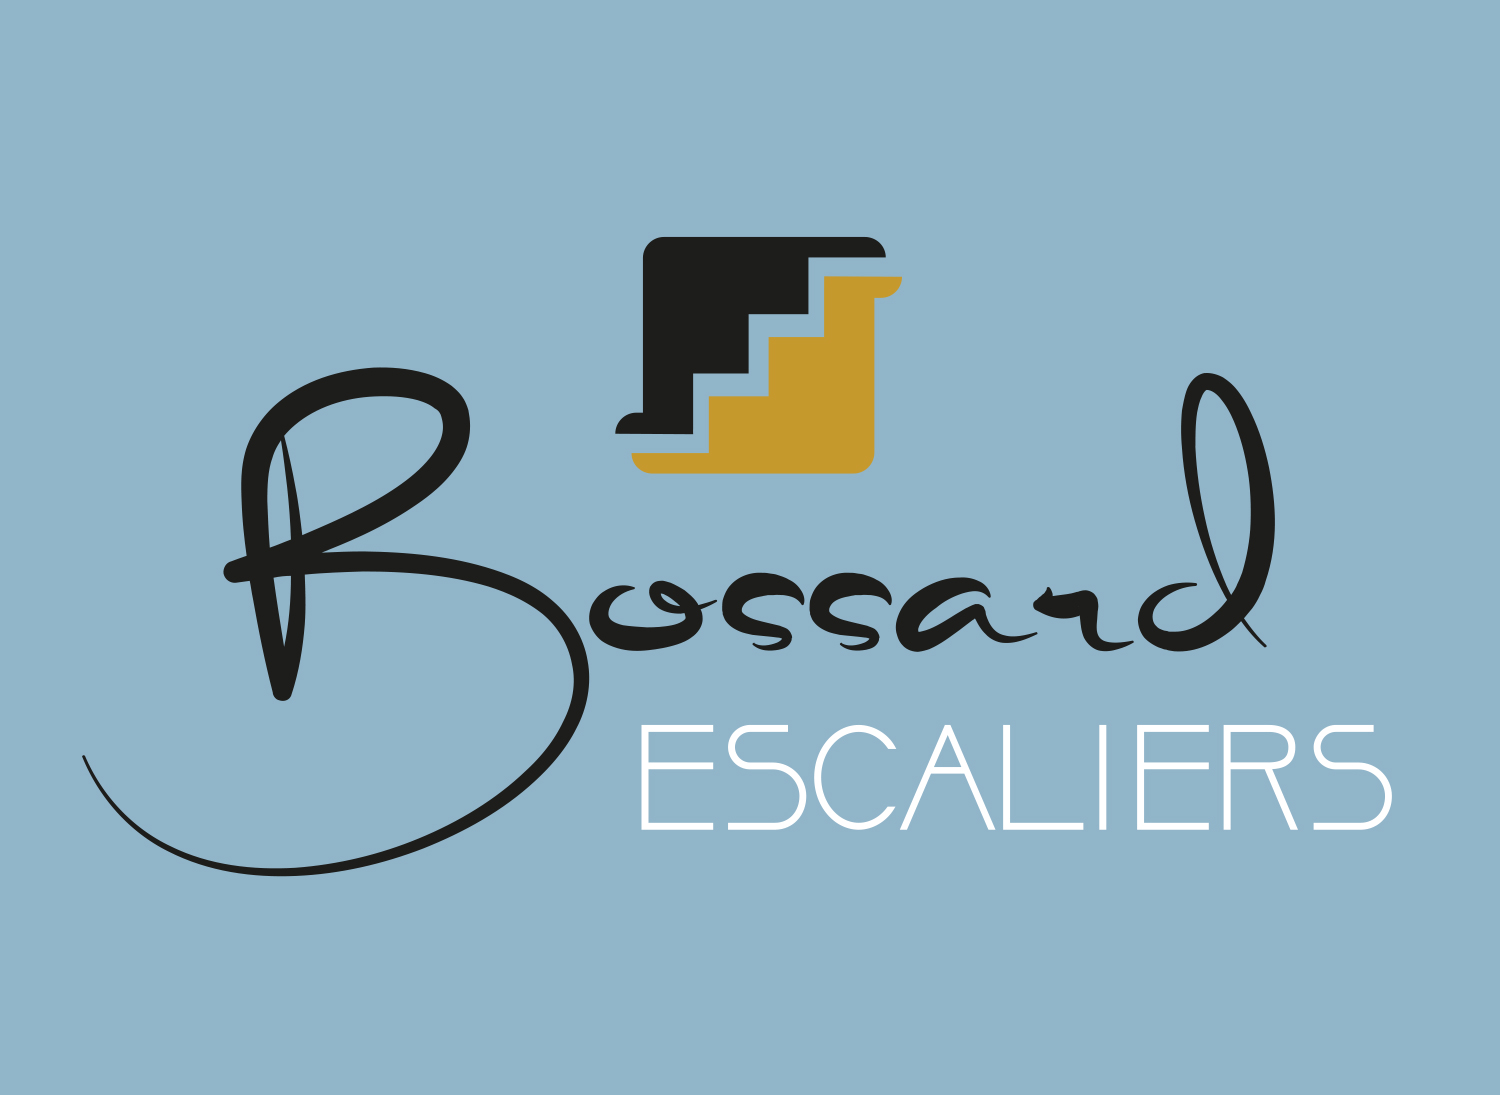 Bossard Escaliers